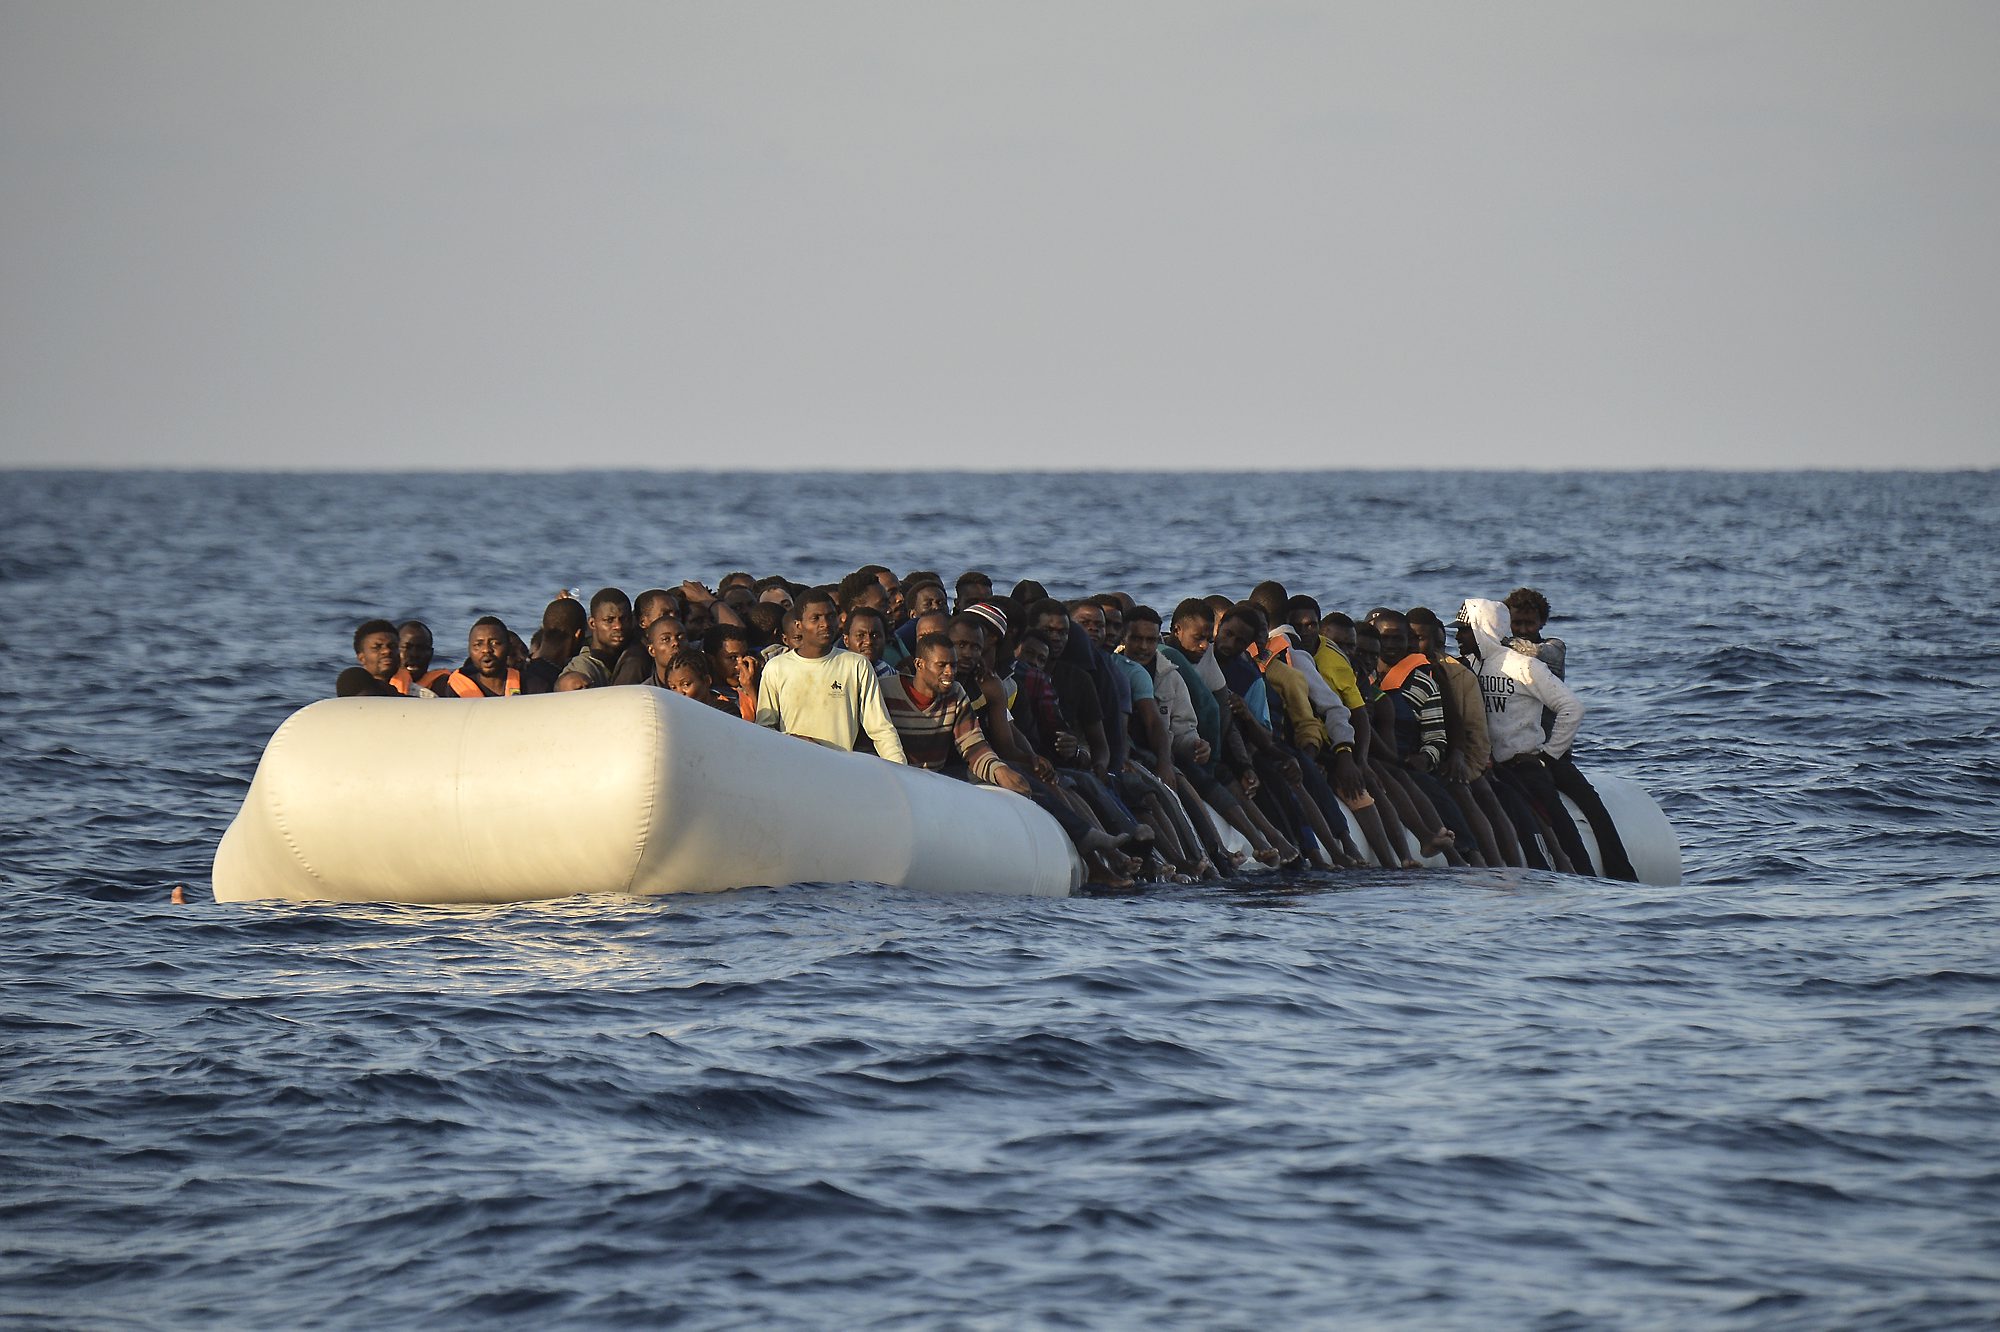 Kilenc migránsokkal teli csónakra bukkantak